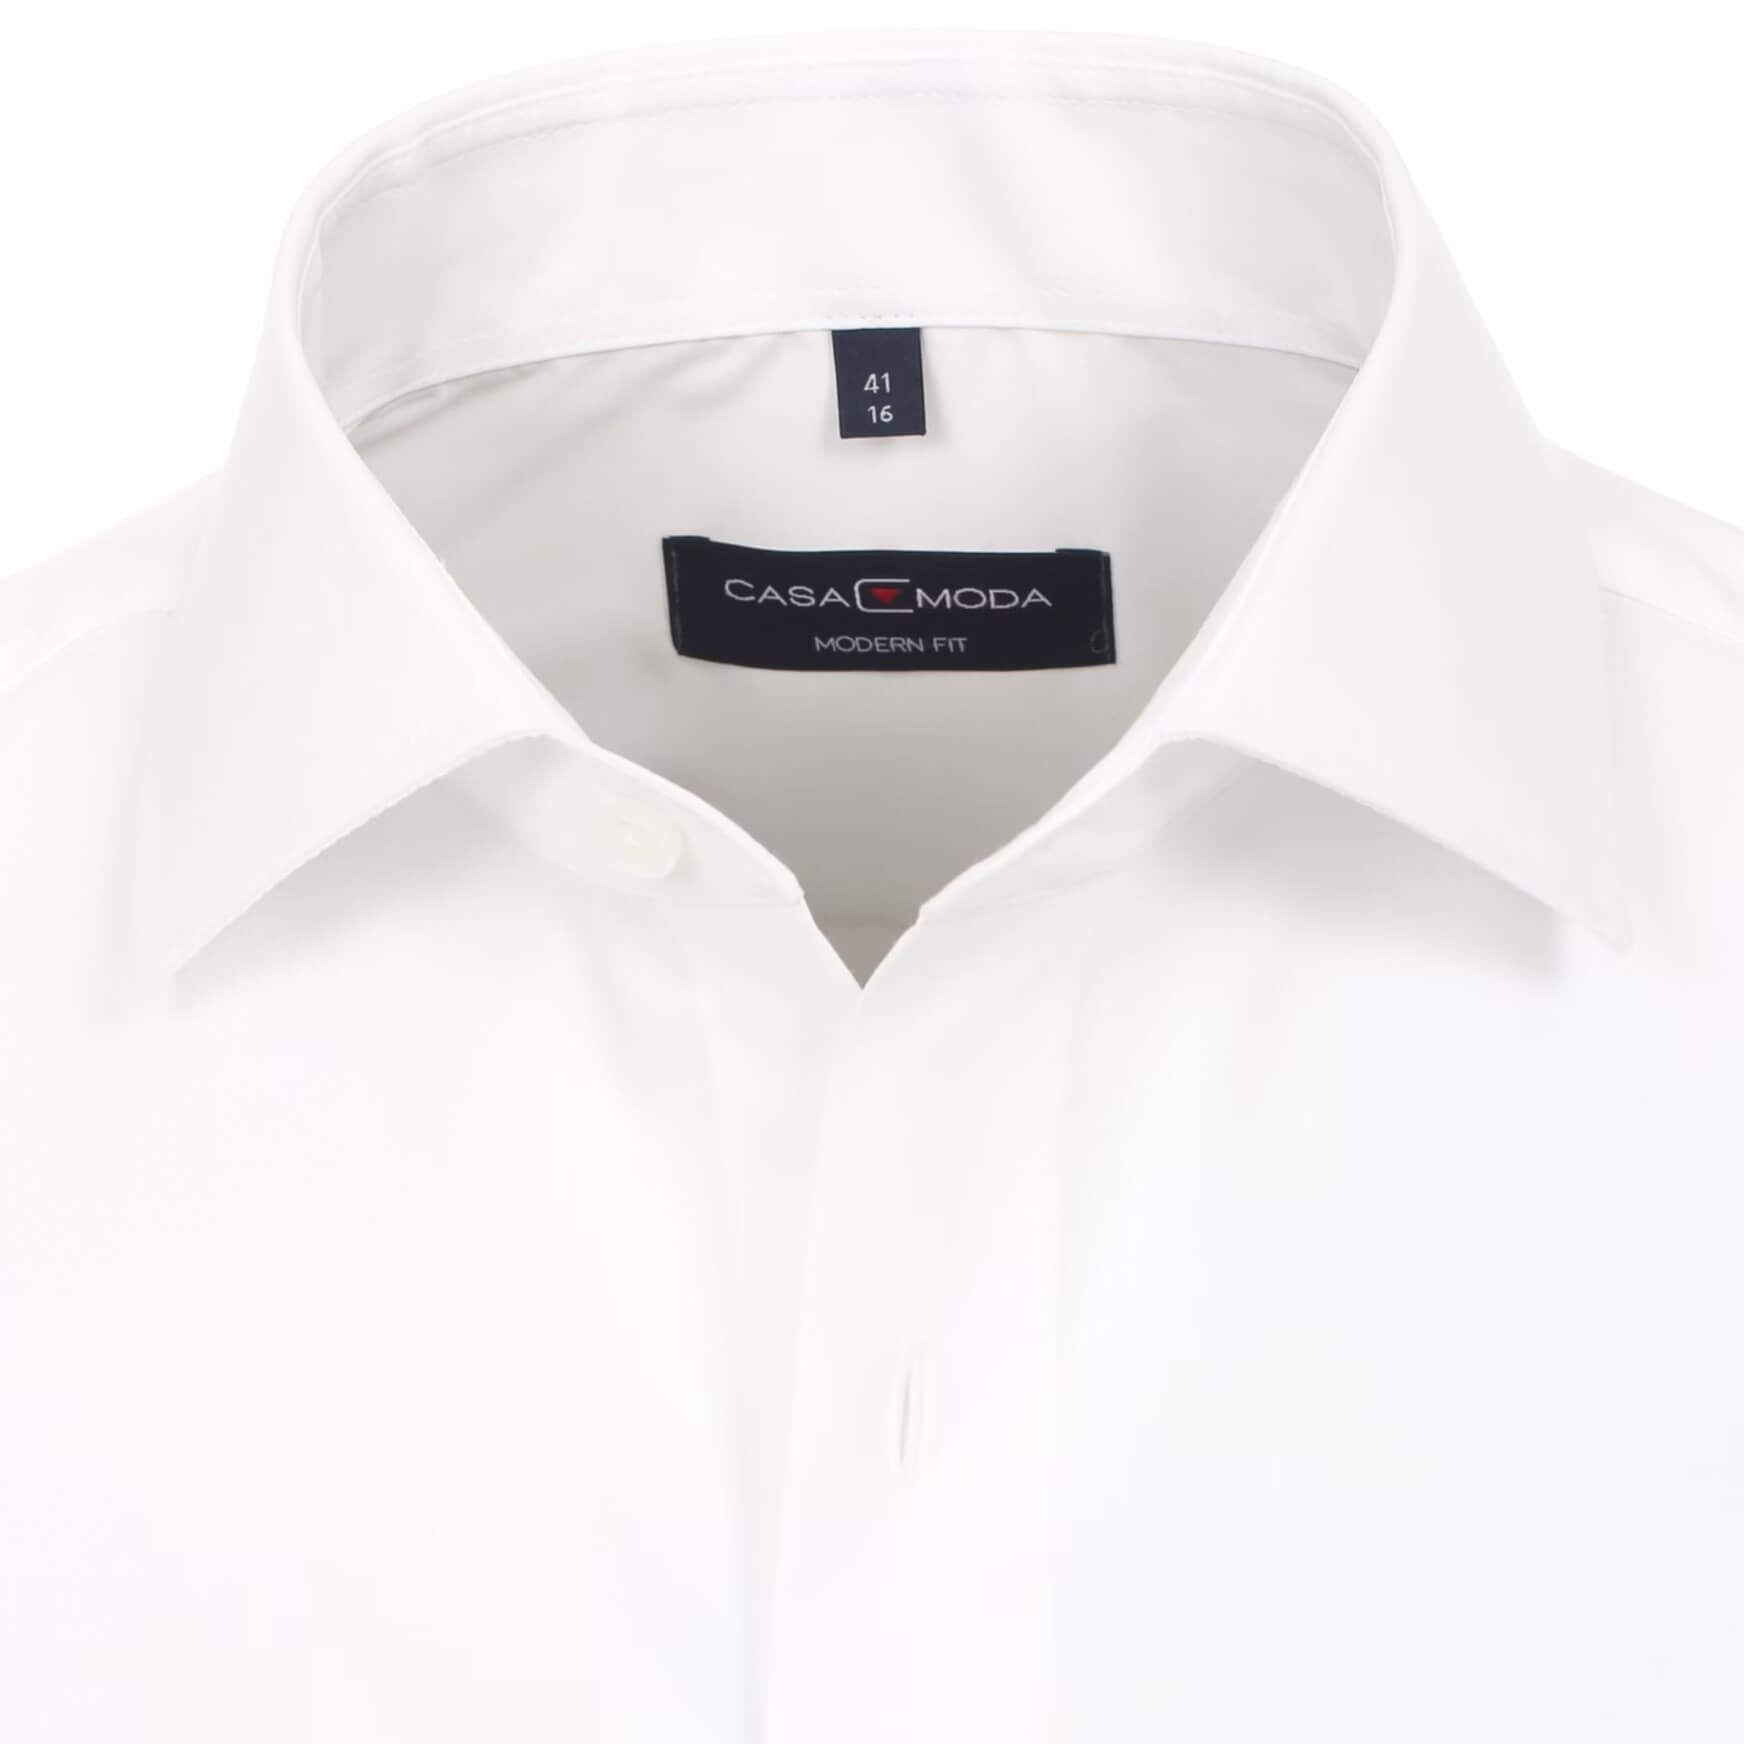 Сорочка мужская Casamoda Modern Fit 006530-000 под костюм белая